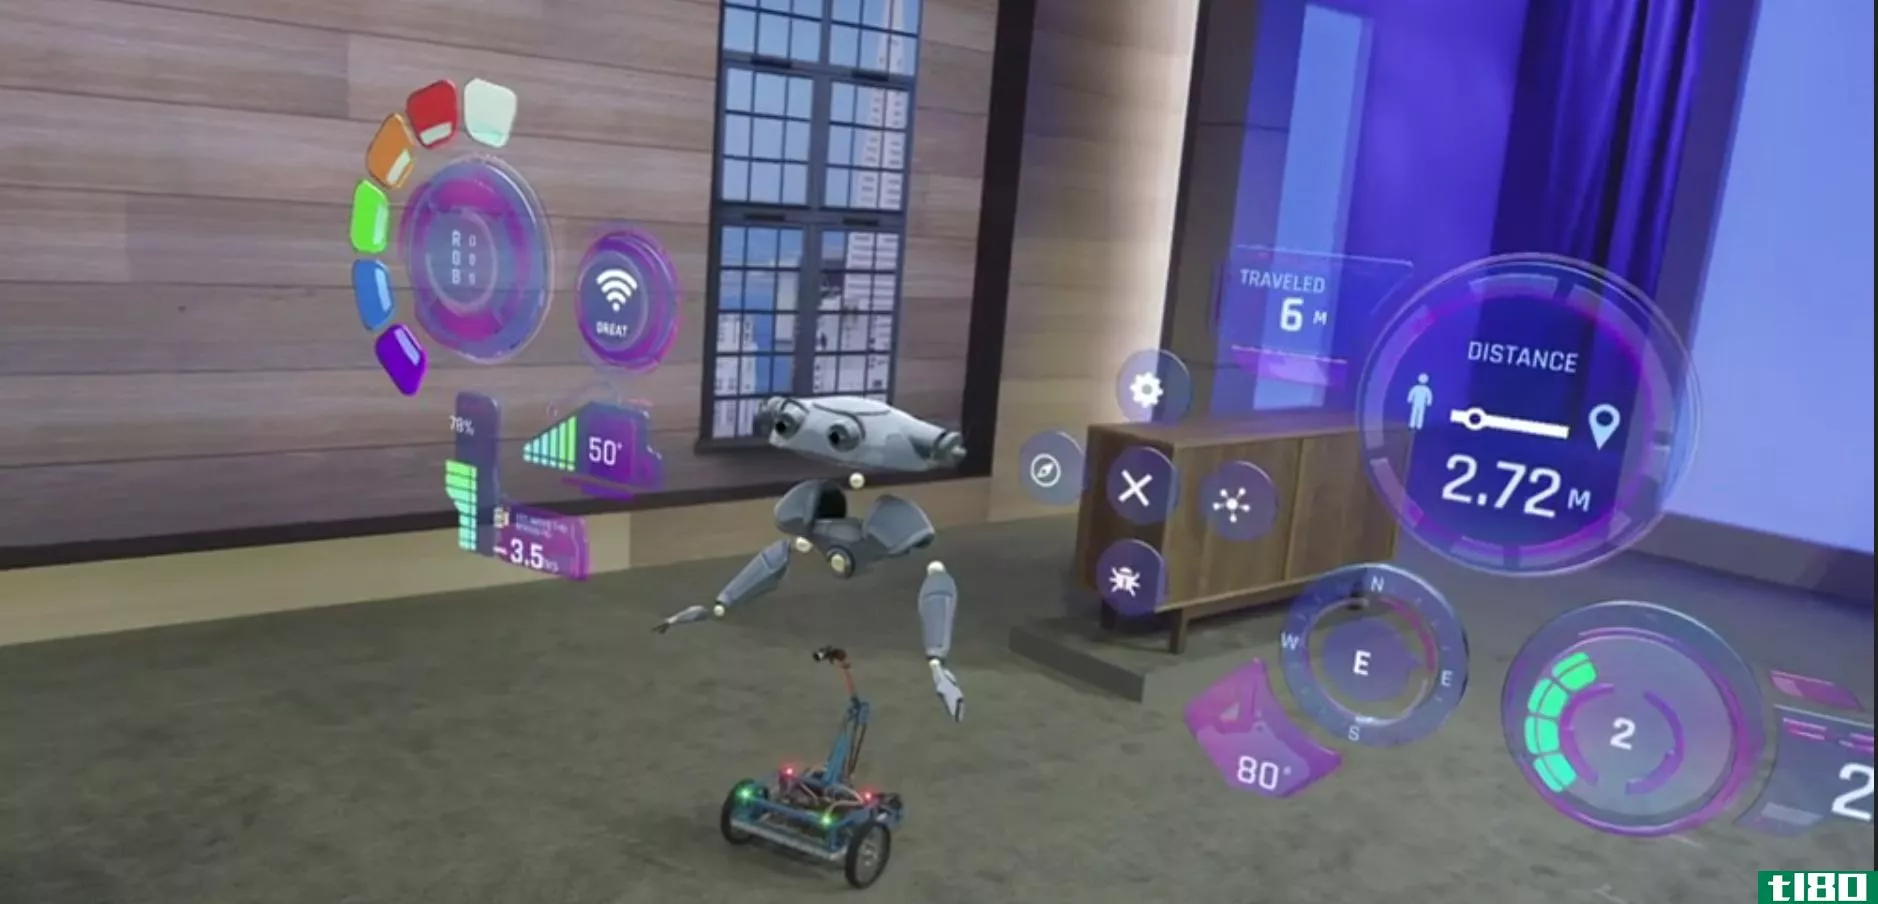 微软用这个可爱的机器人来展示新的全息镜头功能